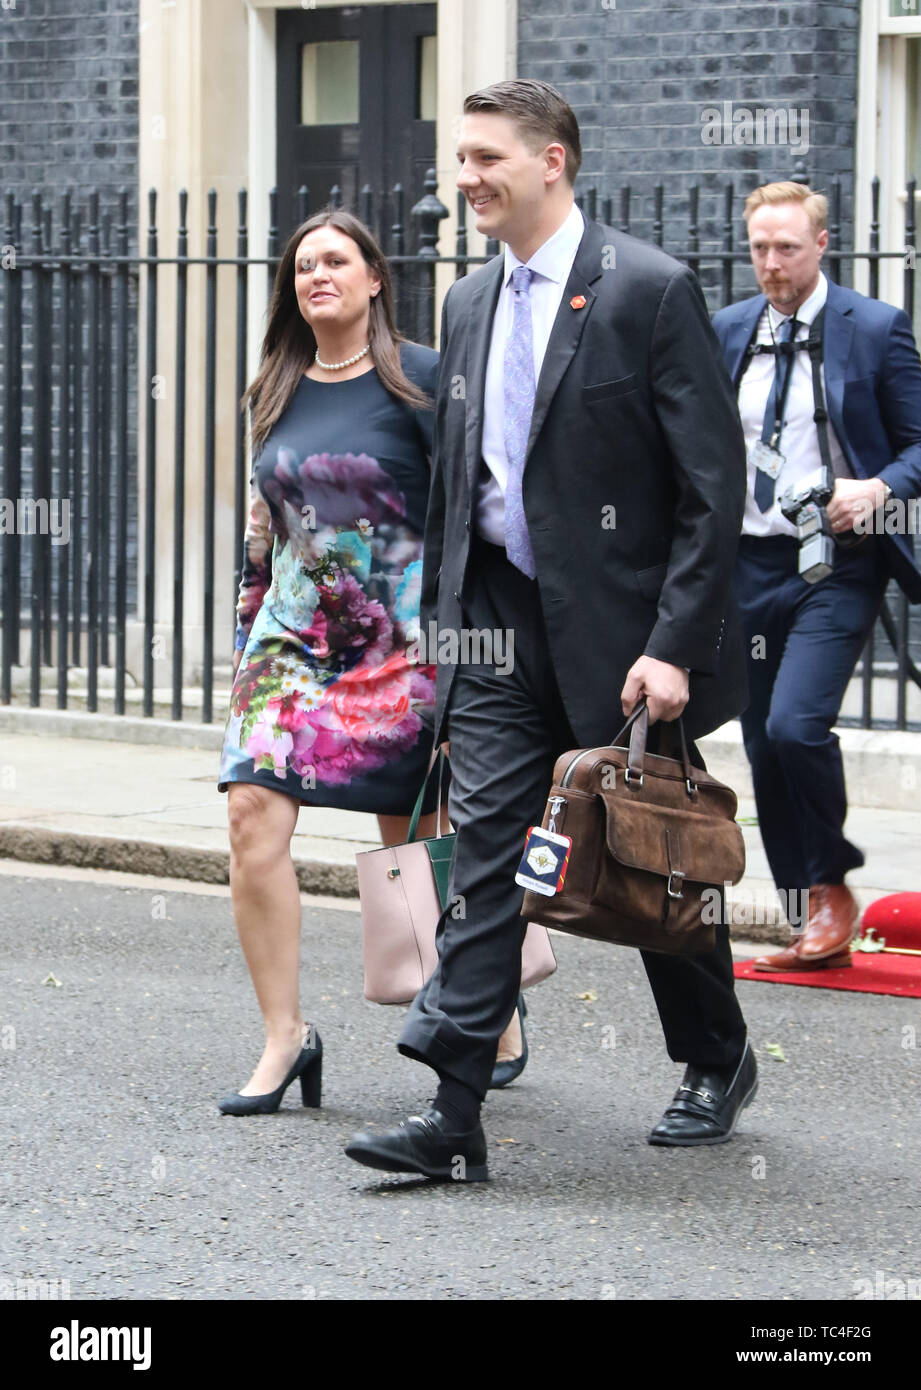 Sarah Sanders, Stati Uniti d'America visita presidenziale per il Regno Unito, Downing Street, Londra, Regno Unito, 04 giugno 2019, Foto di Richard Goldschmi Foto Stock